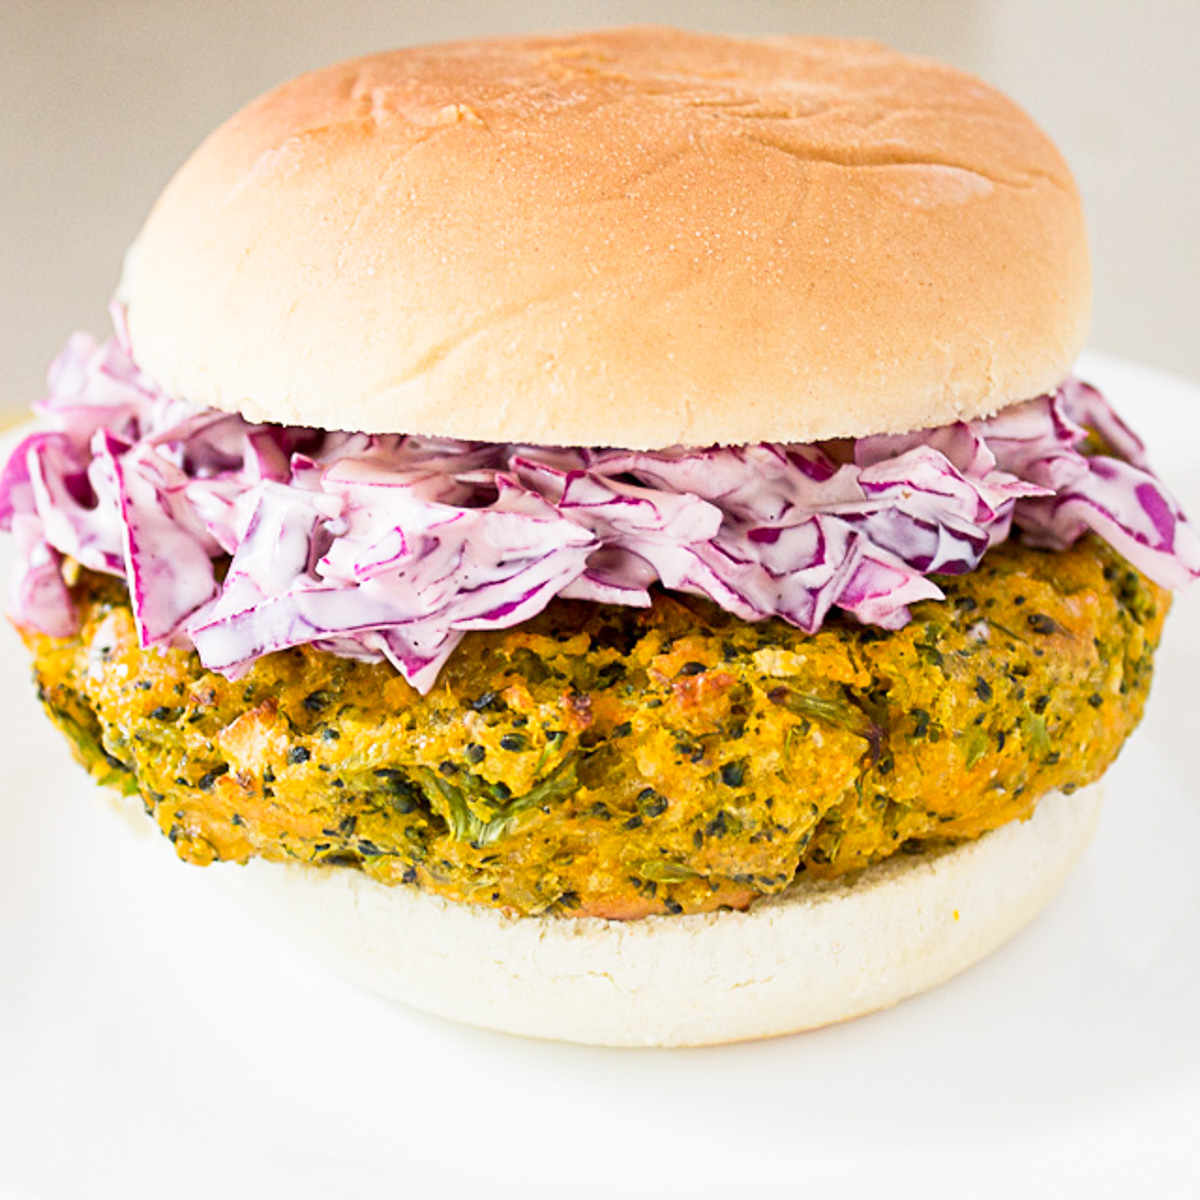 veggie burger with coleslaw in bun on plate